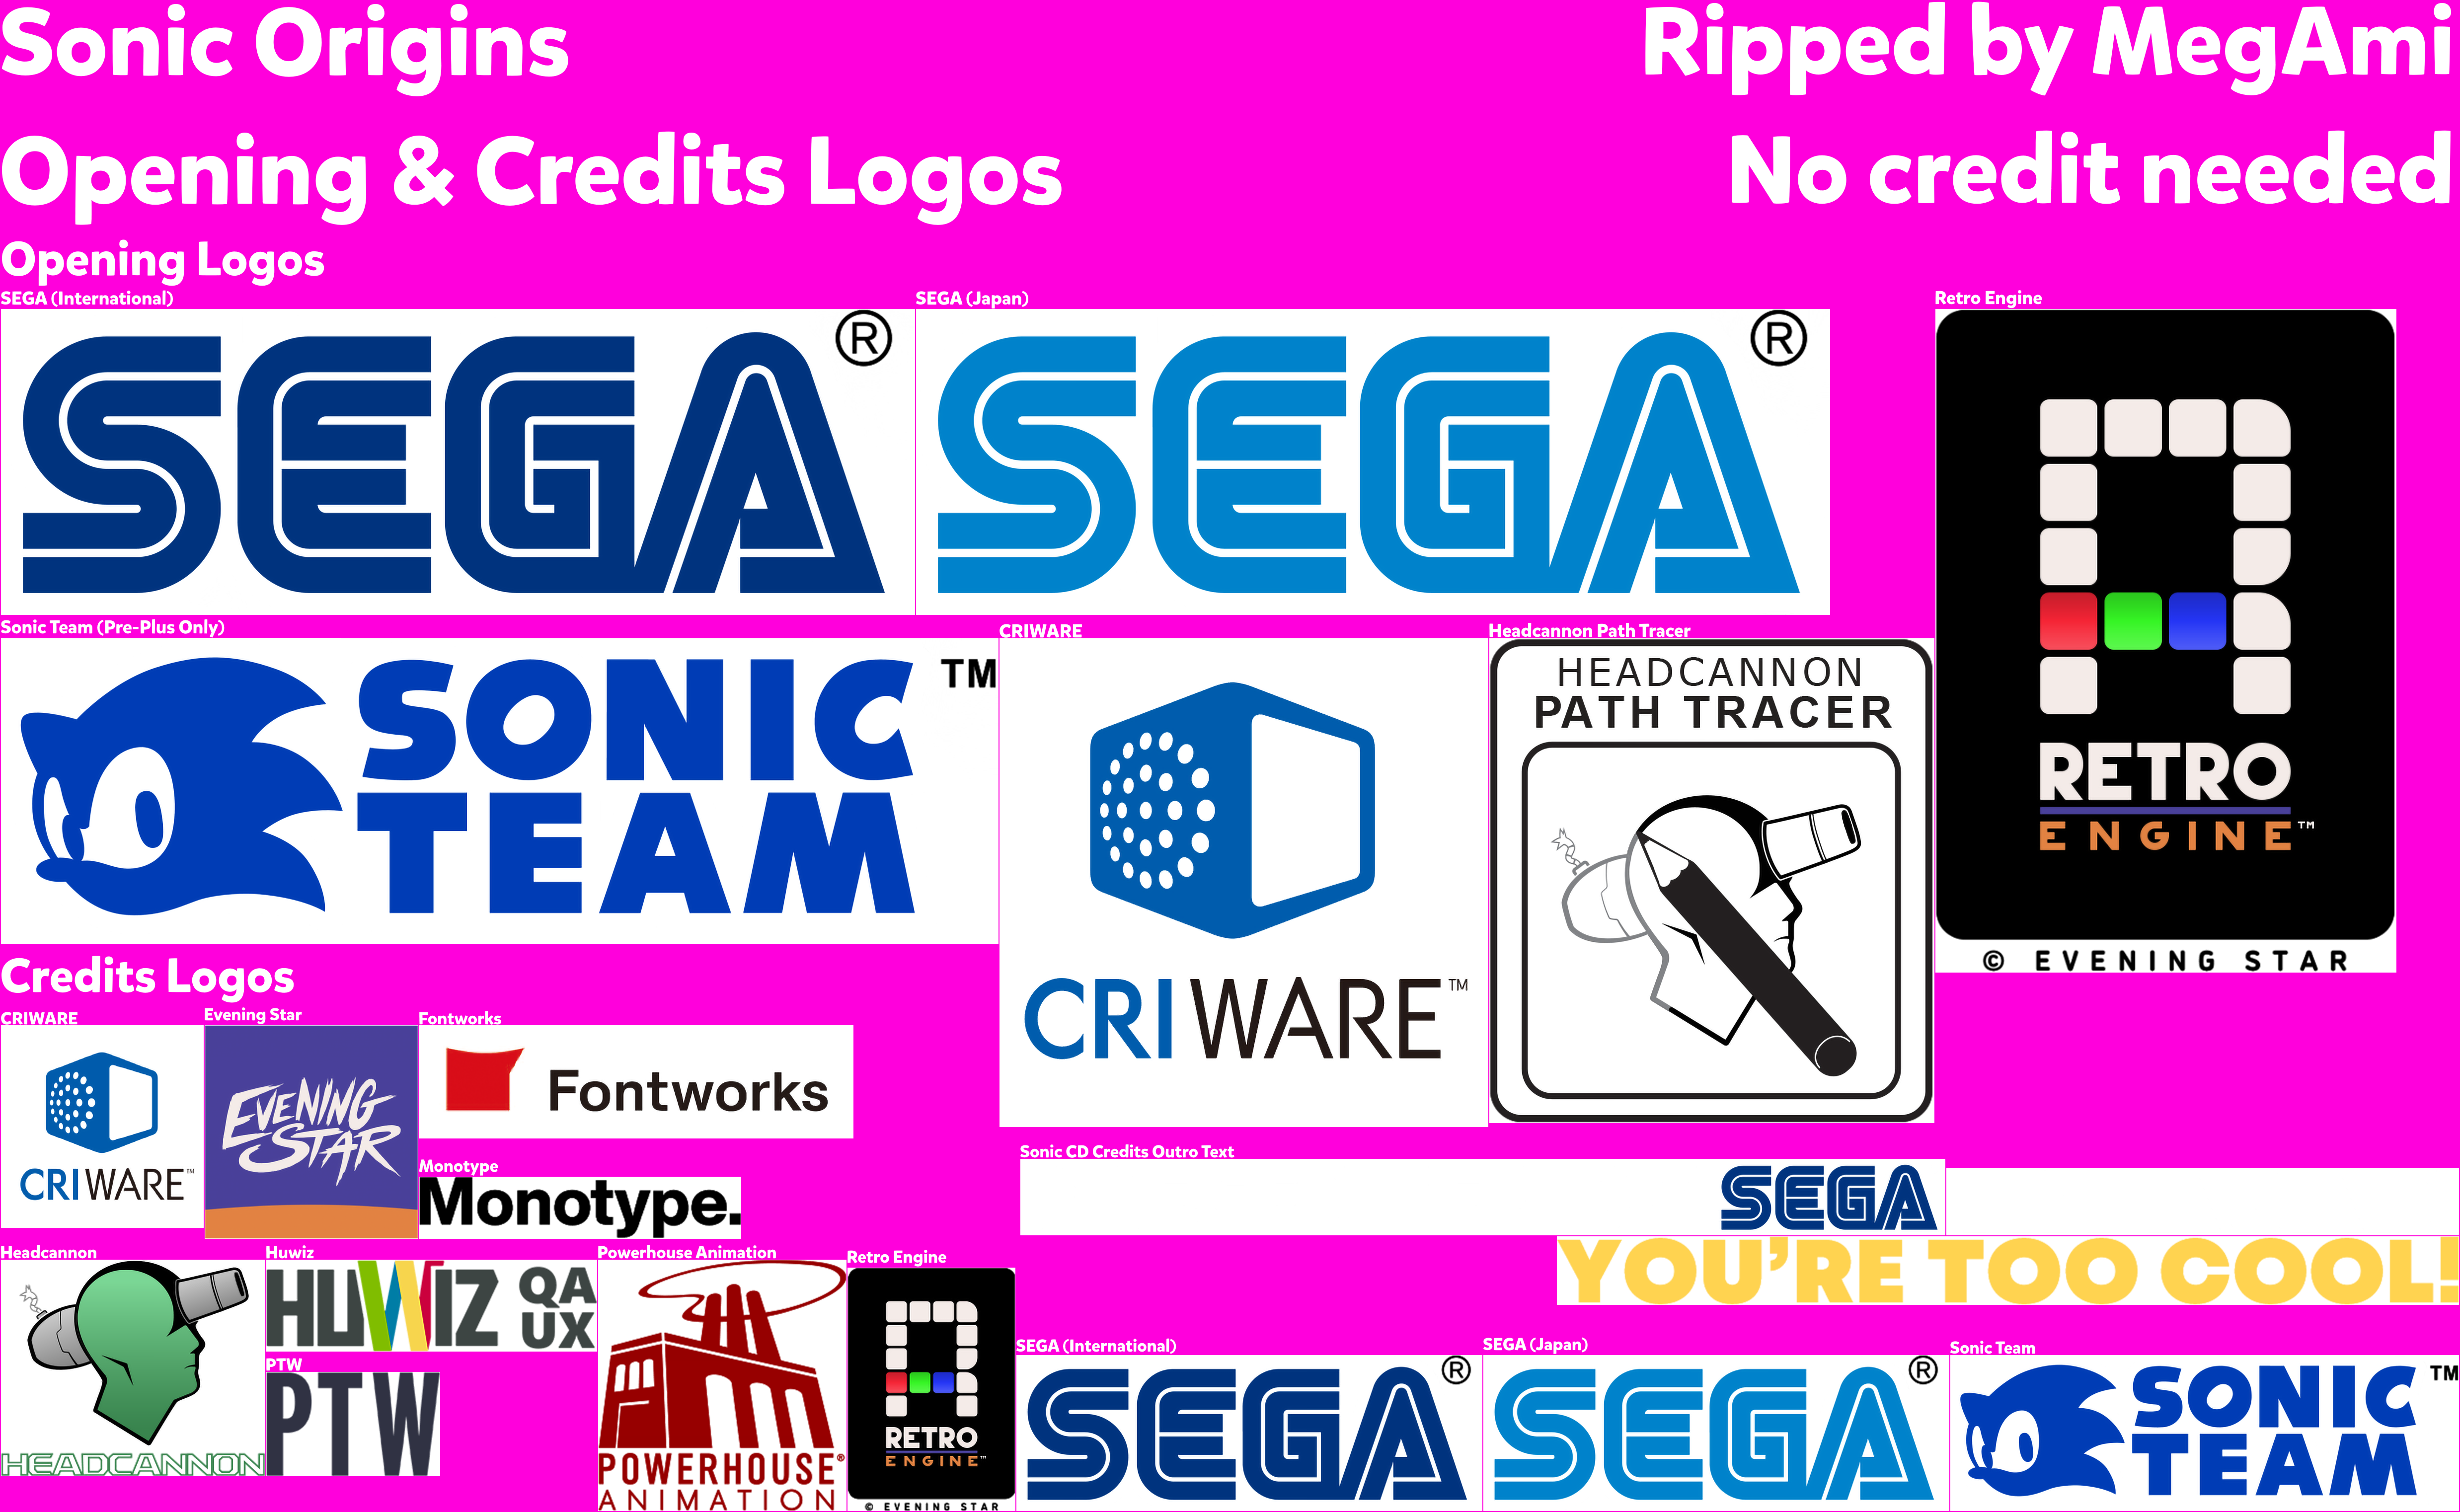 Opening & Credits Logos